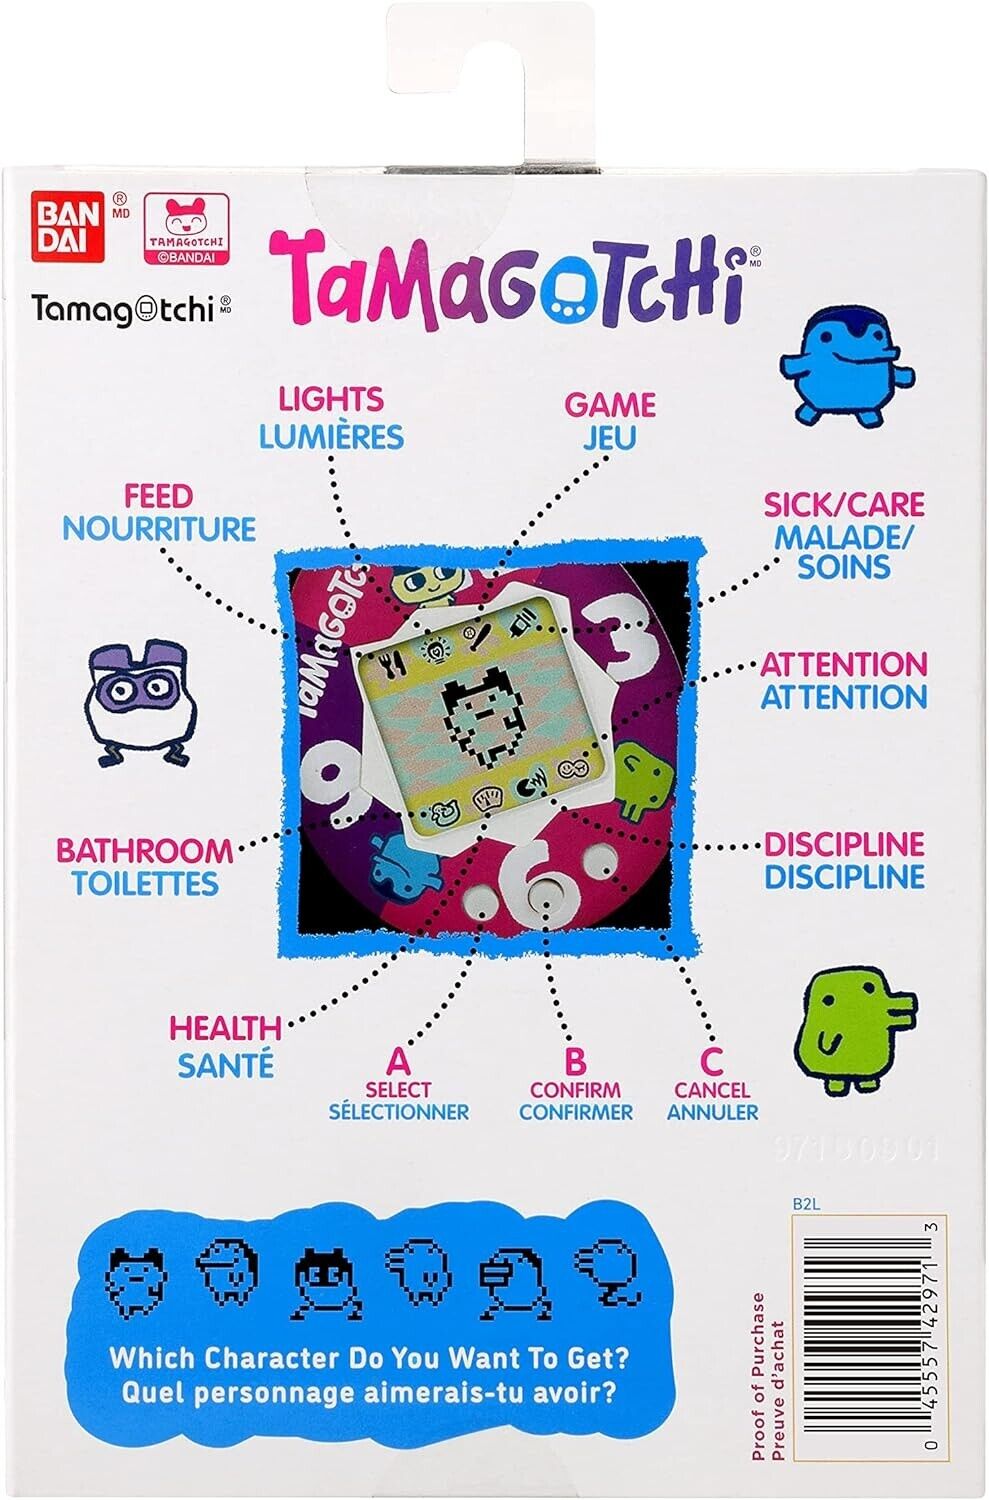 BANDAI Tamagotchi Original Berry Delicious Shell | Tamagotchi Original Cyber Pet